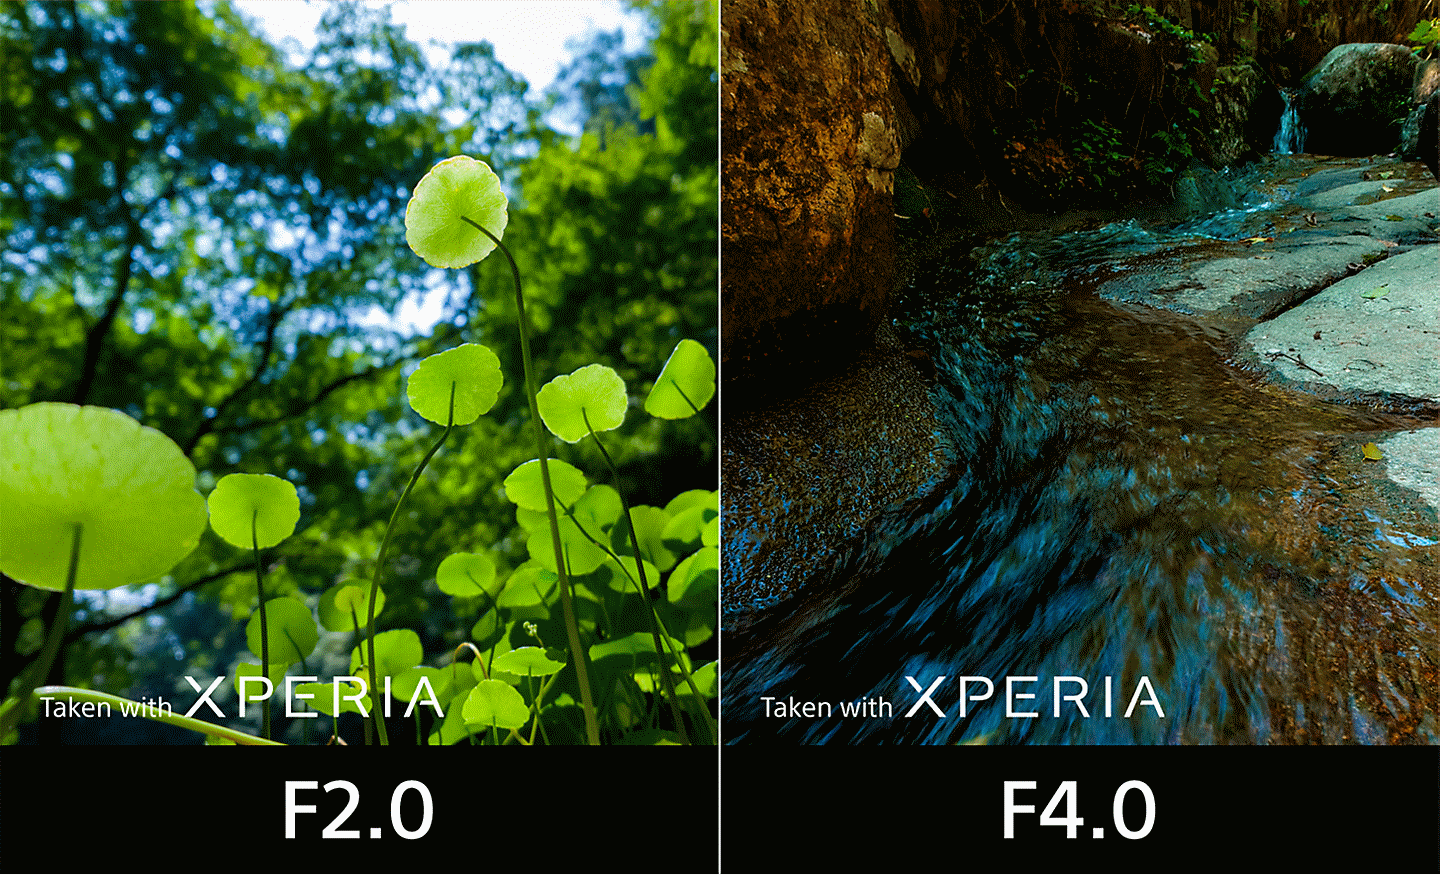 Écran partagé comparant deux images, l’une représentant du feuillage pris avec une ouverture à F2.0 et l’autre représentant un ruisseau pris à F4.0. Le texte des images indique : « Photo prise avec un XPERIA ».